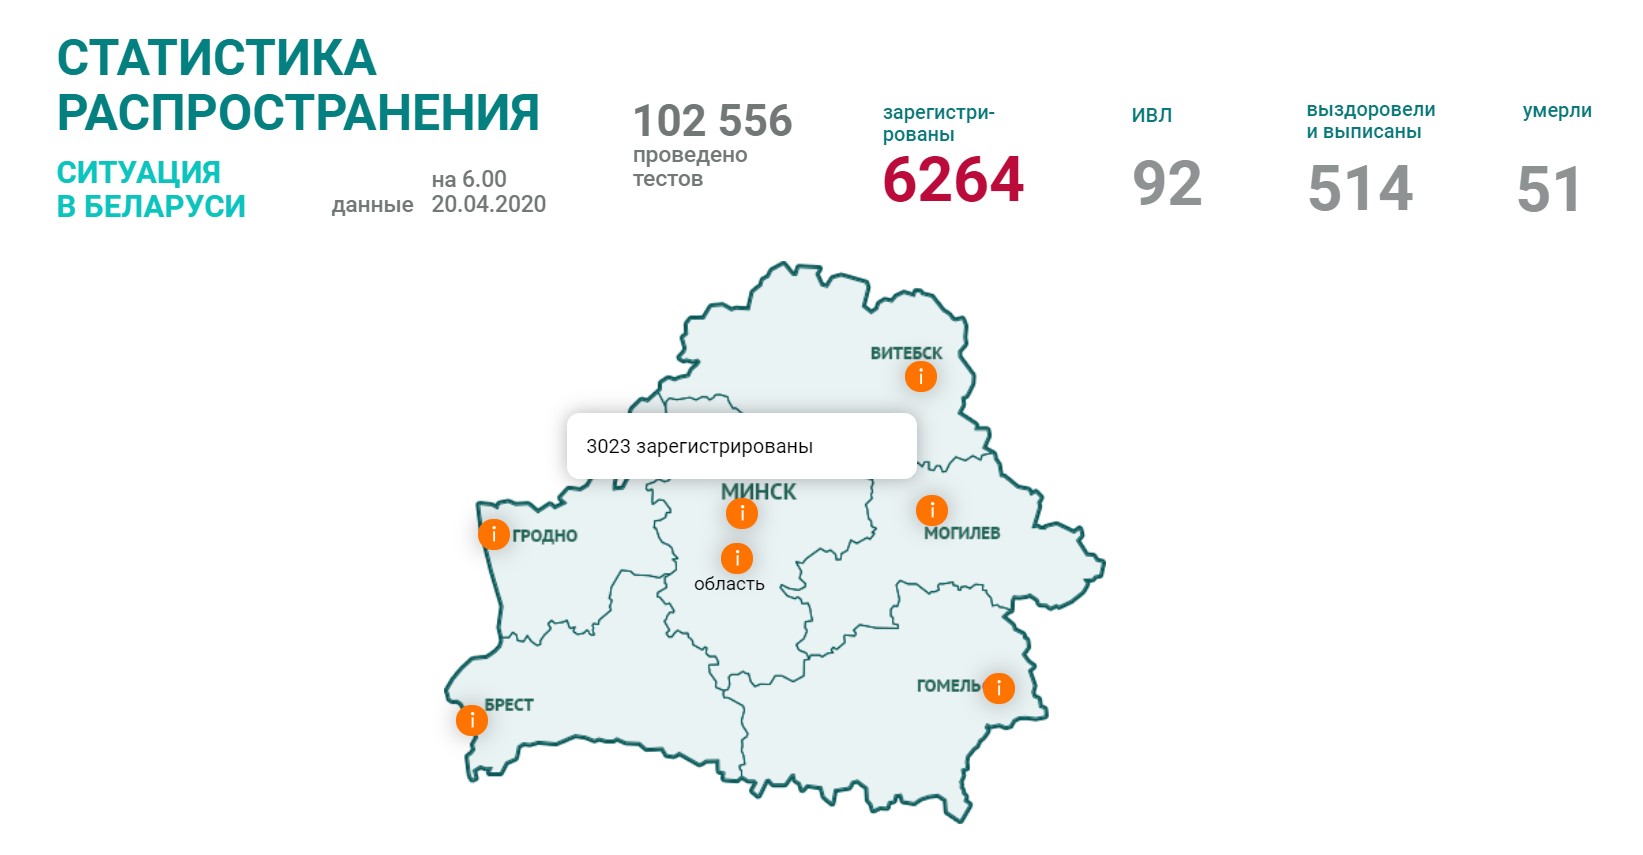 В Беларуси выявлено 6264 случая коронавируса